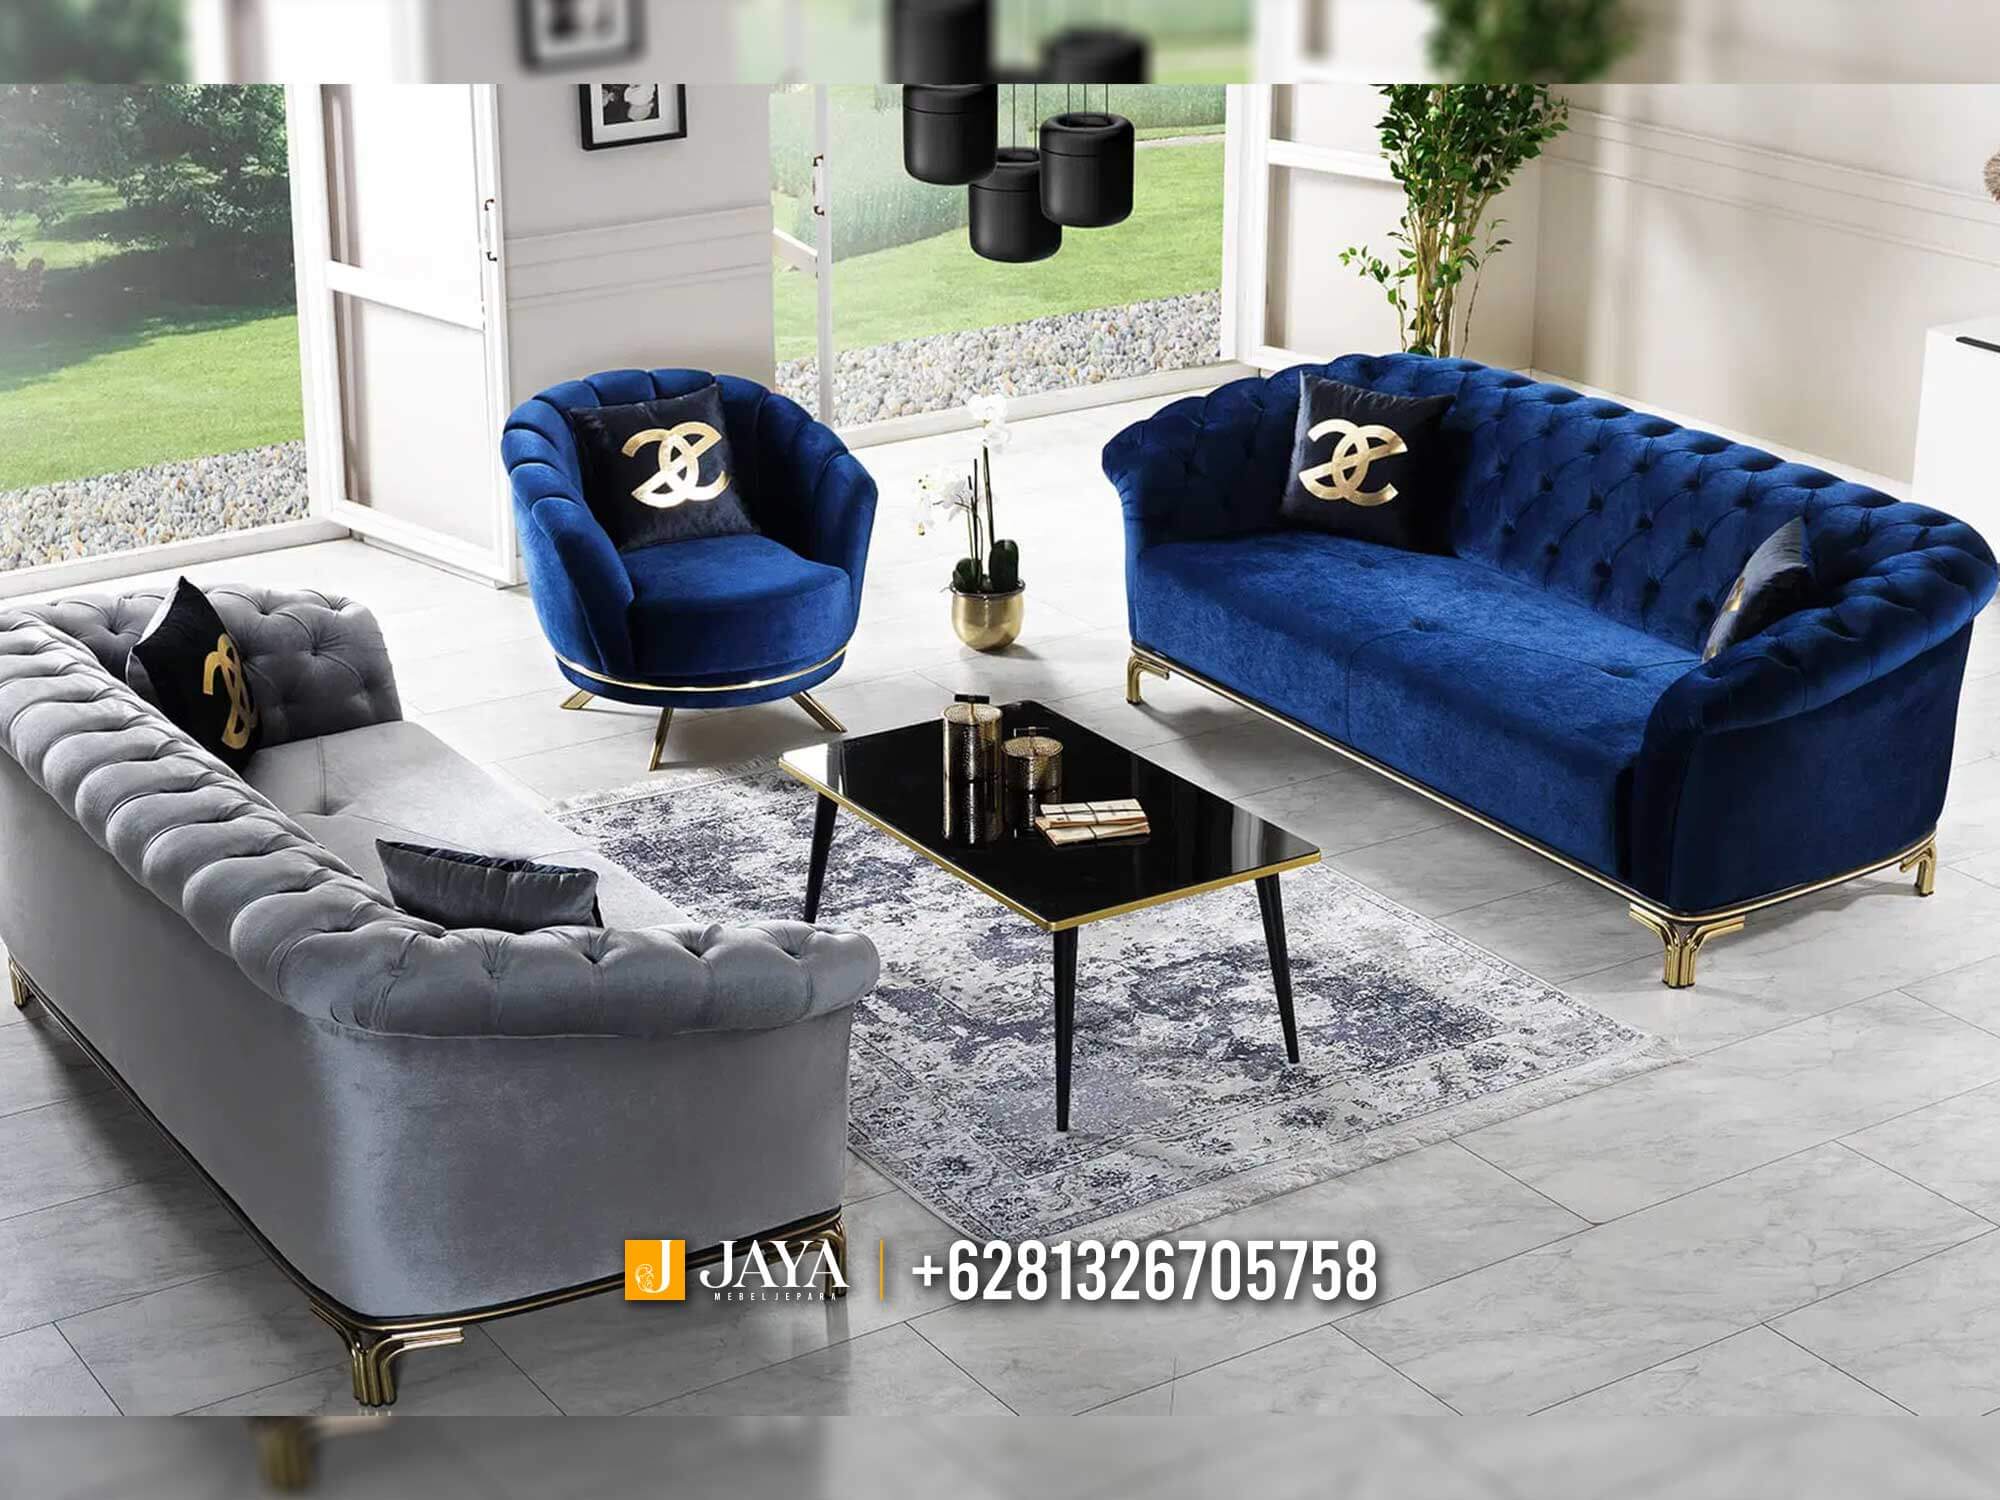 Set Sofa Tamu Minimalis Modern Luxury Stainless Steel JM740